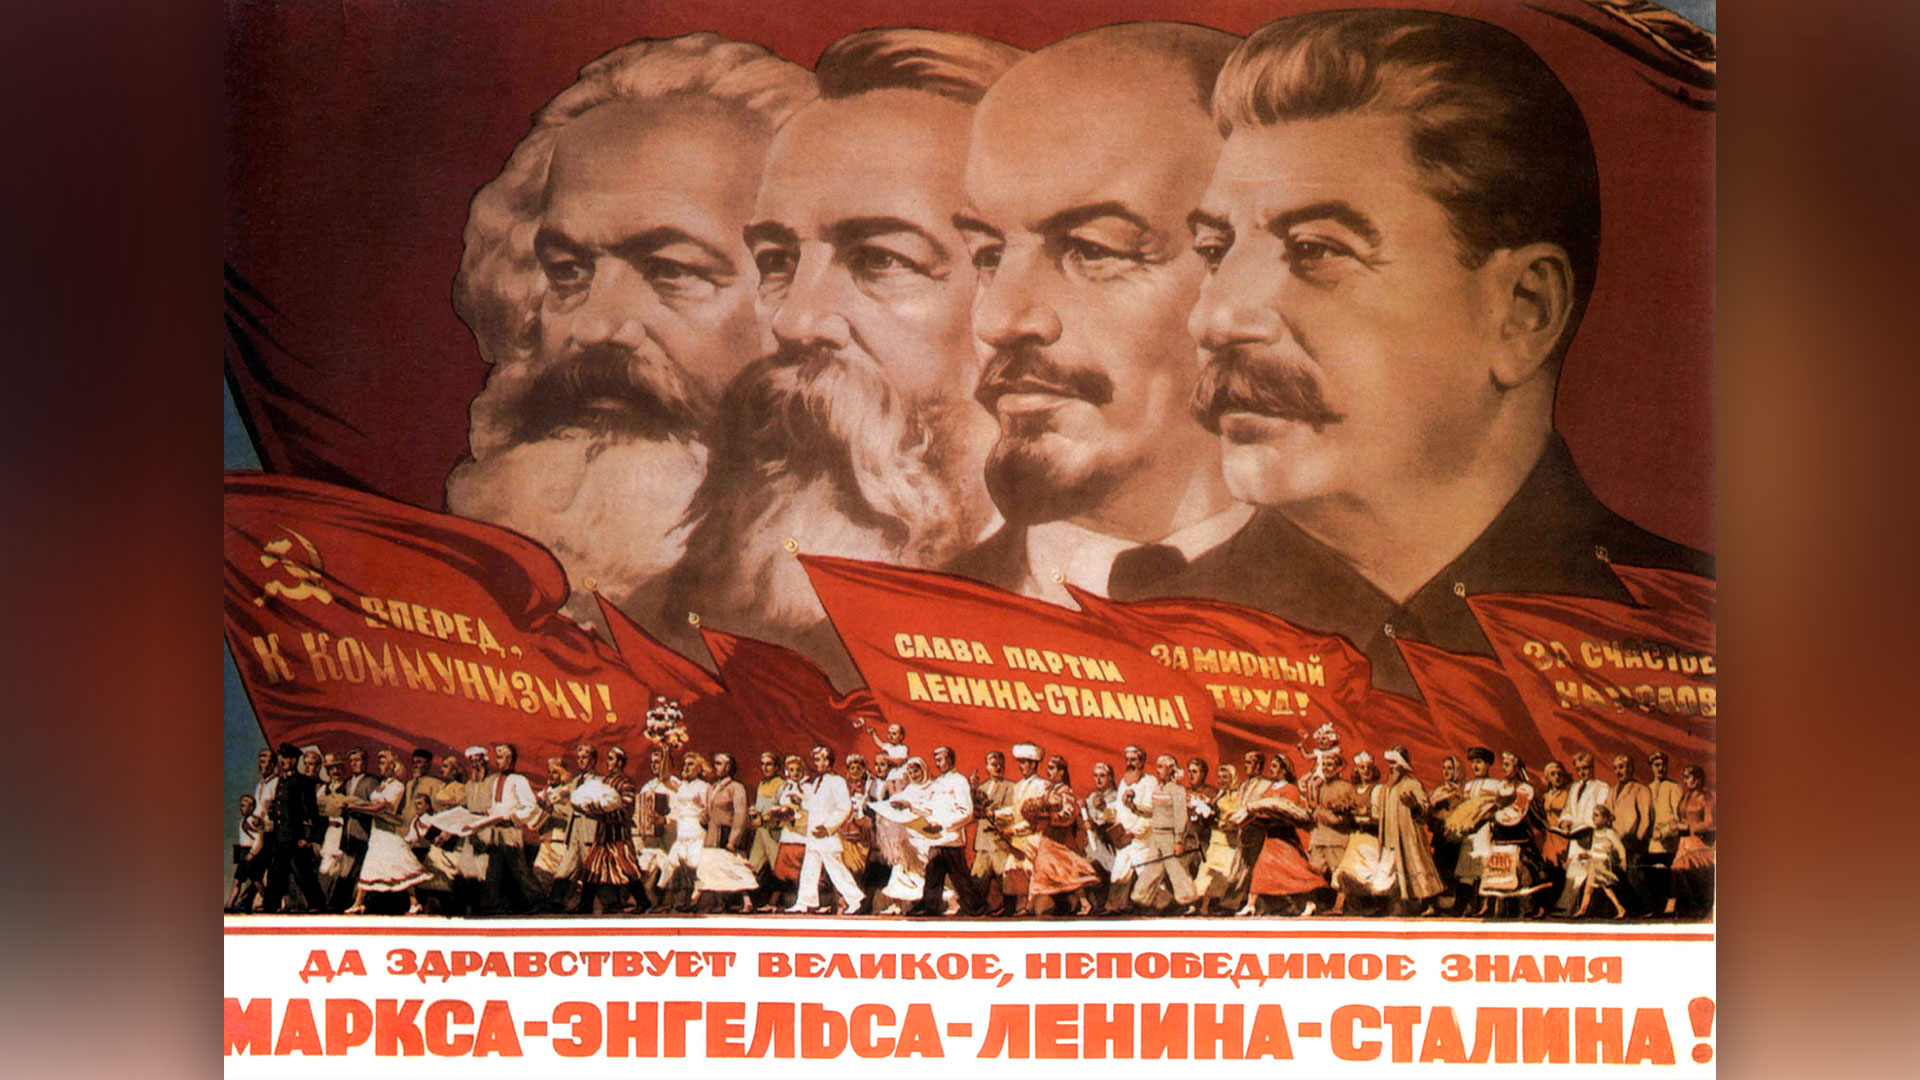 الشعبوية نشأت مع ثورة  روسيا القيصرية 